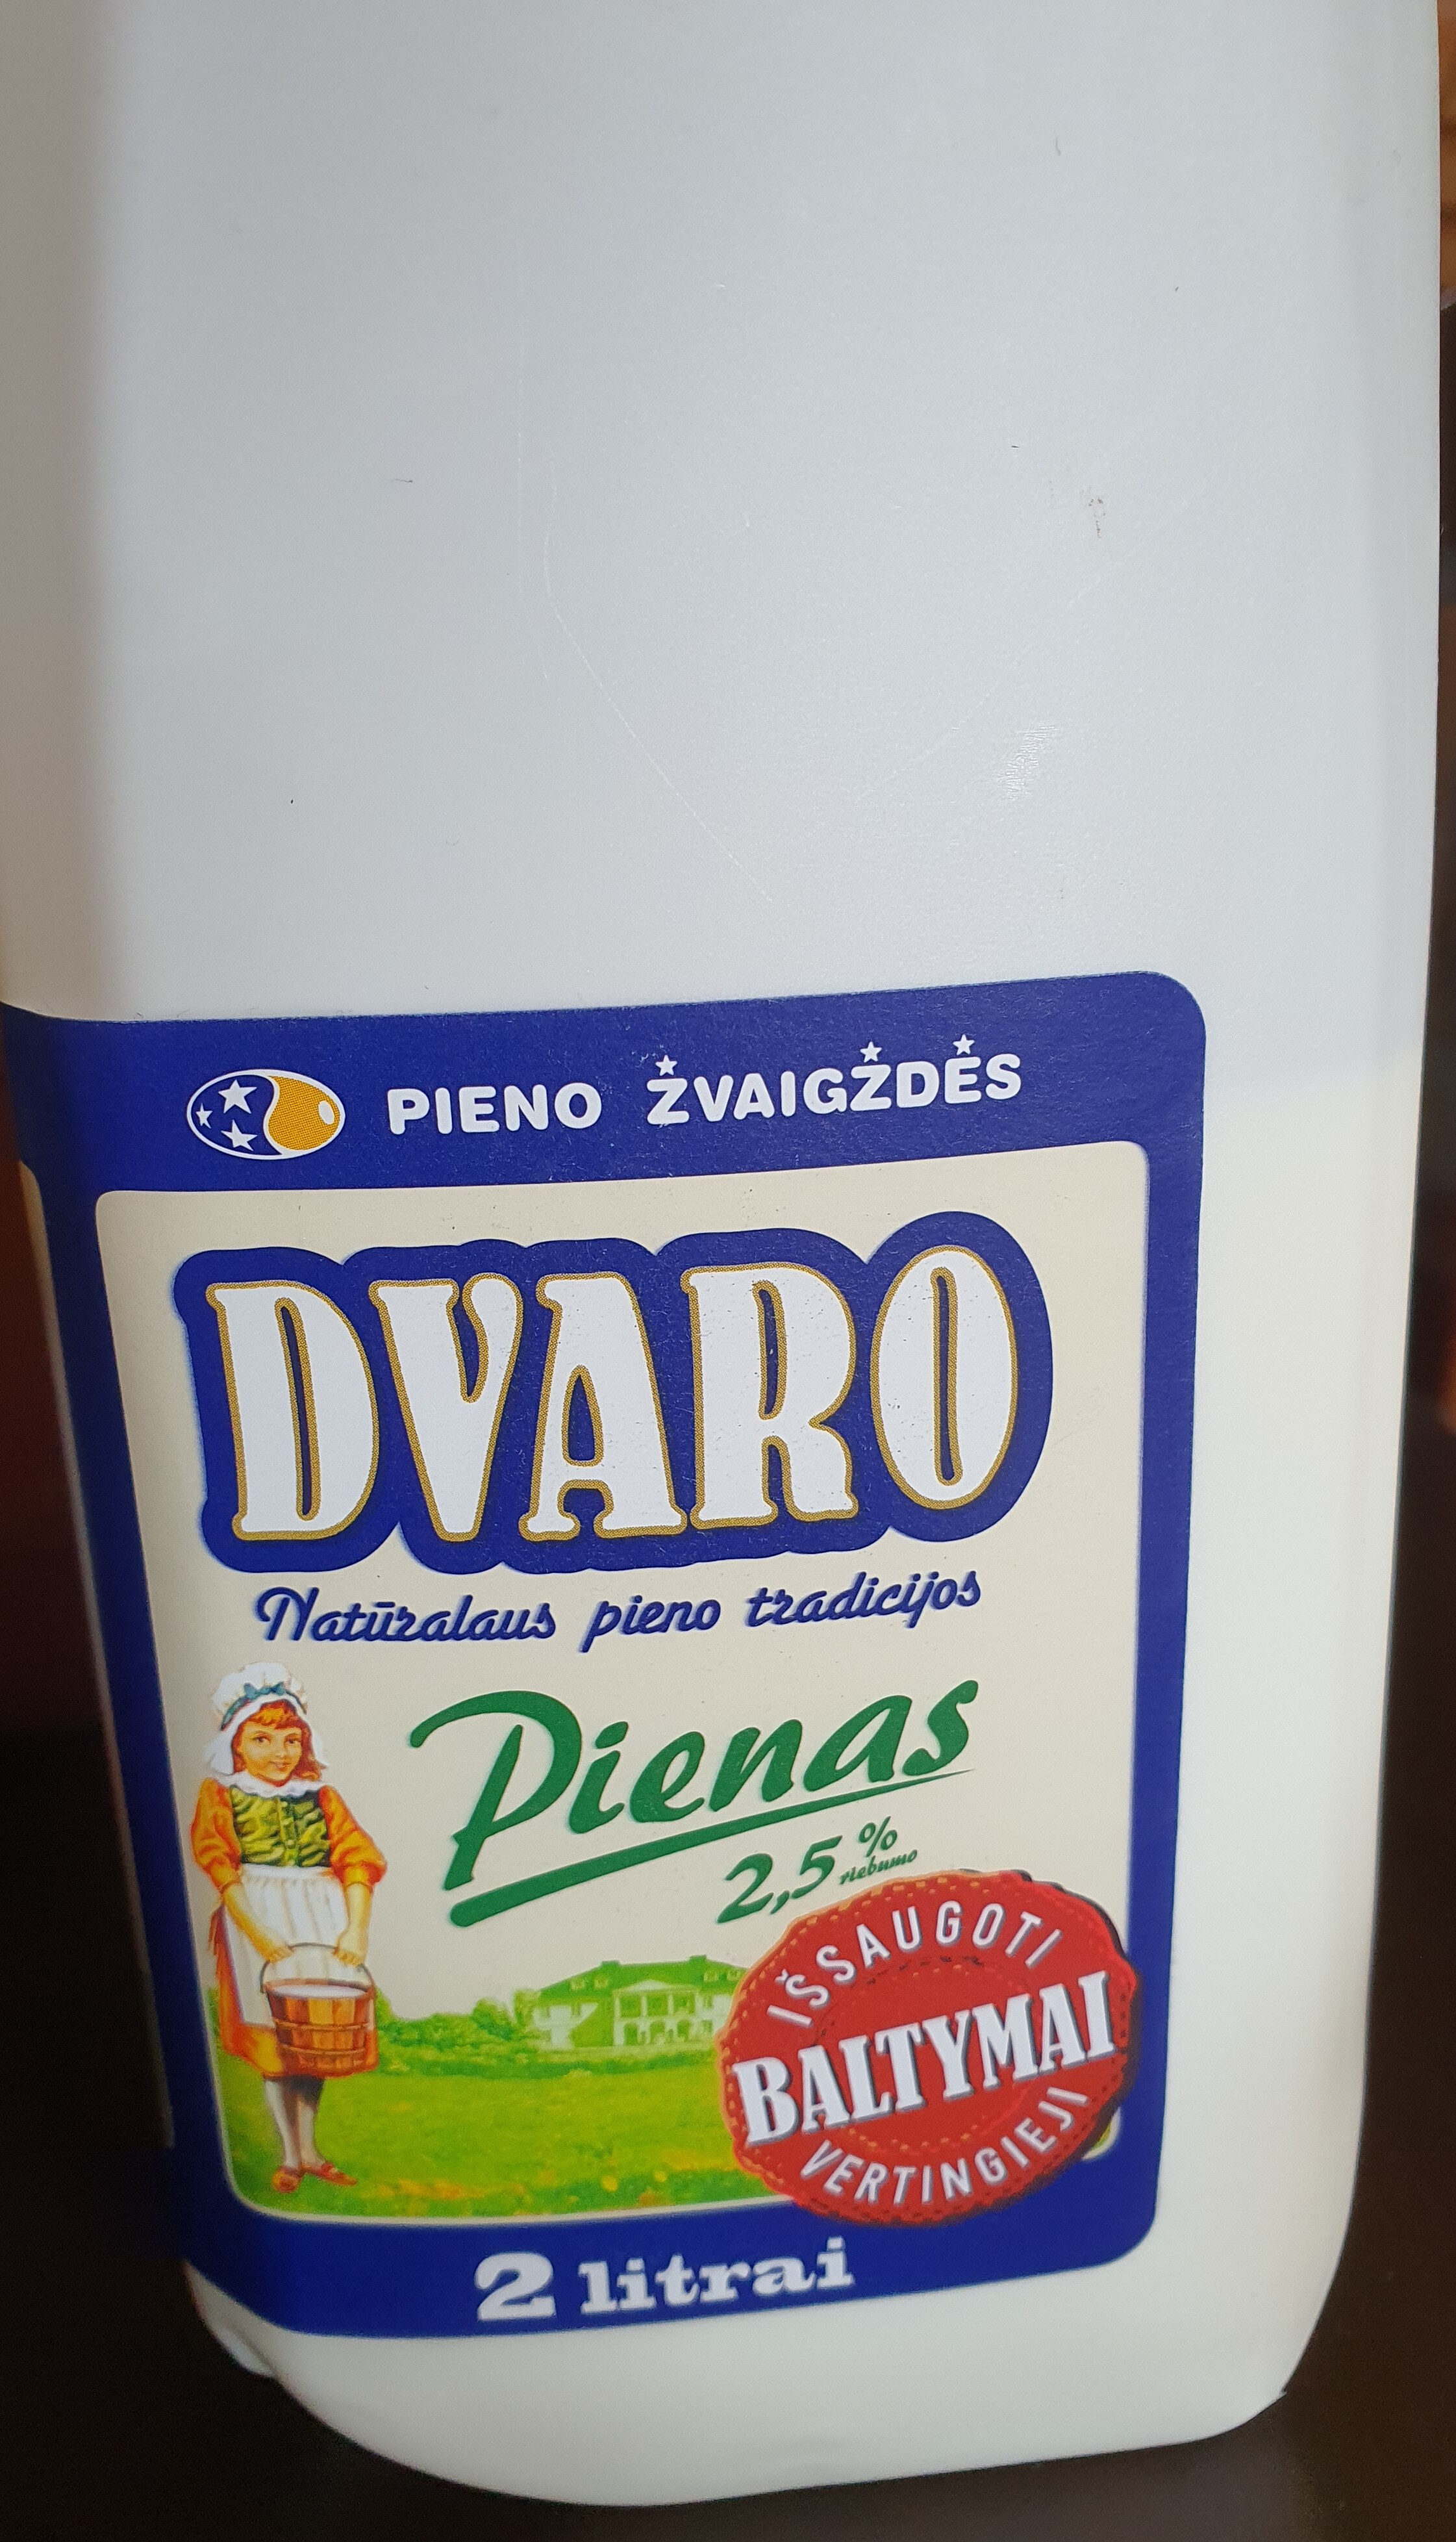 Pienas DVARO 2,5% rieb., pasterizuotas, 2l. - Produktas